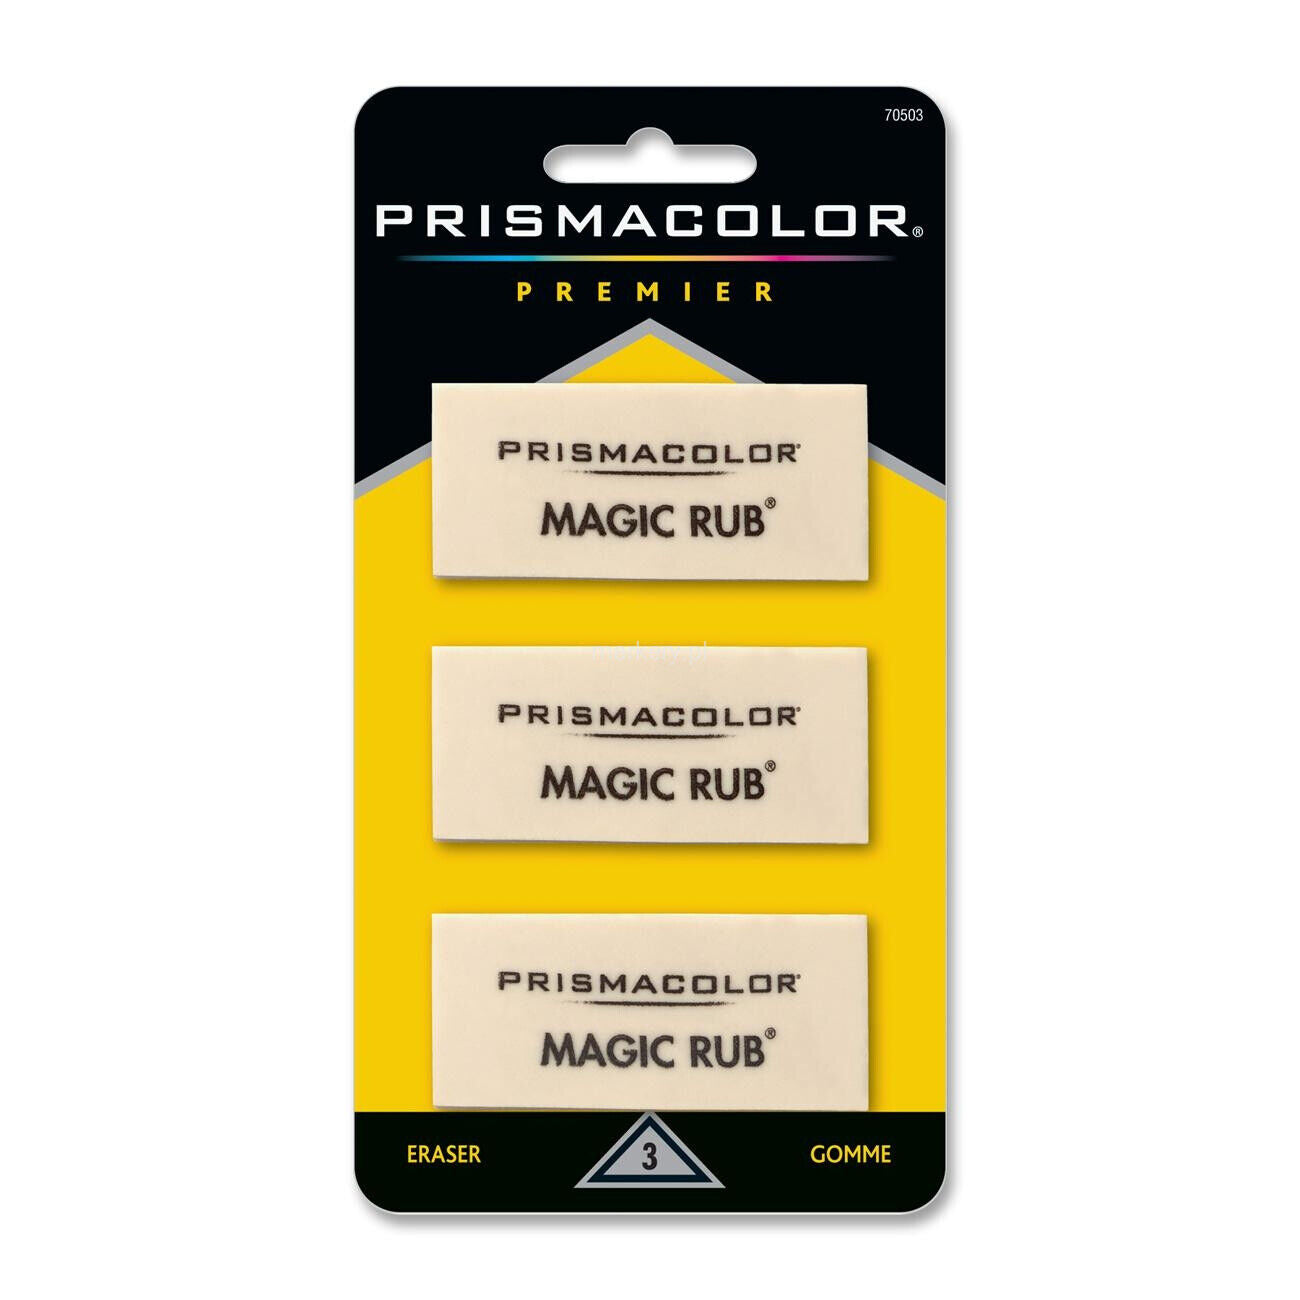 Prismacolor Premier Magic Rub vinylgum, 3 stuks